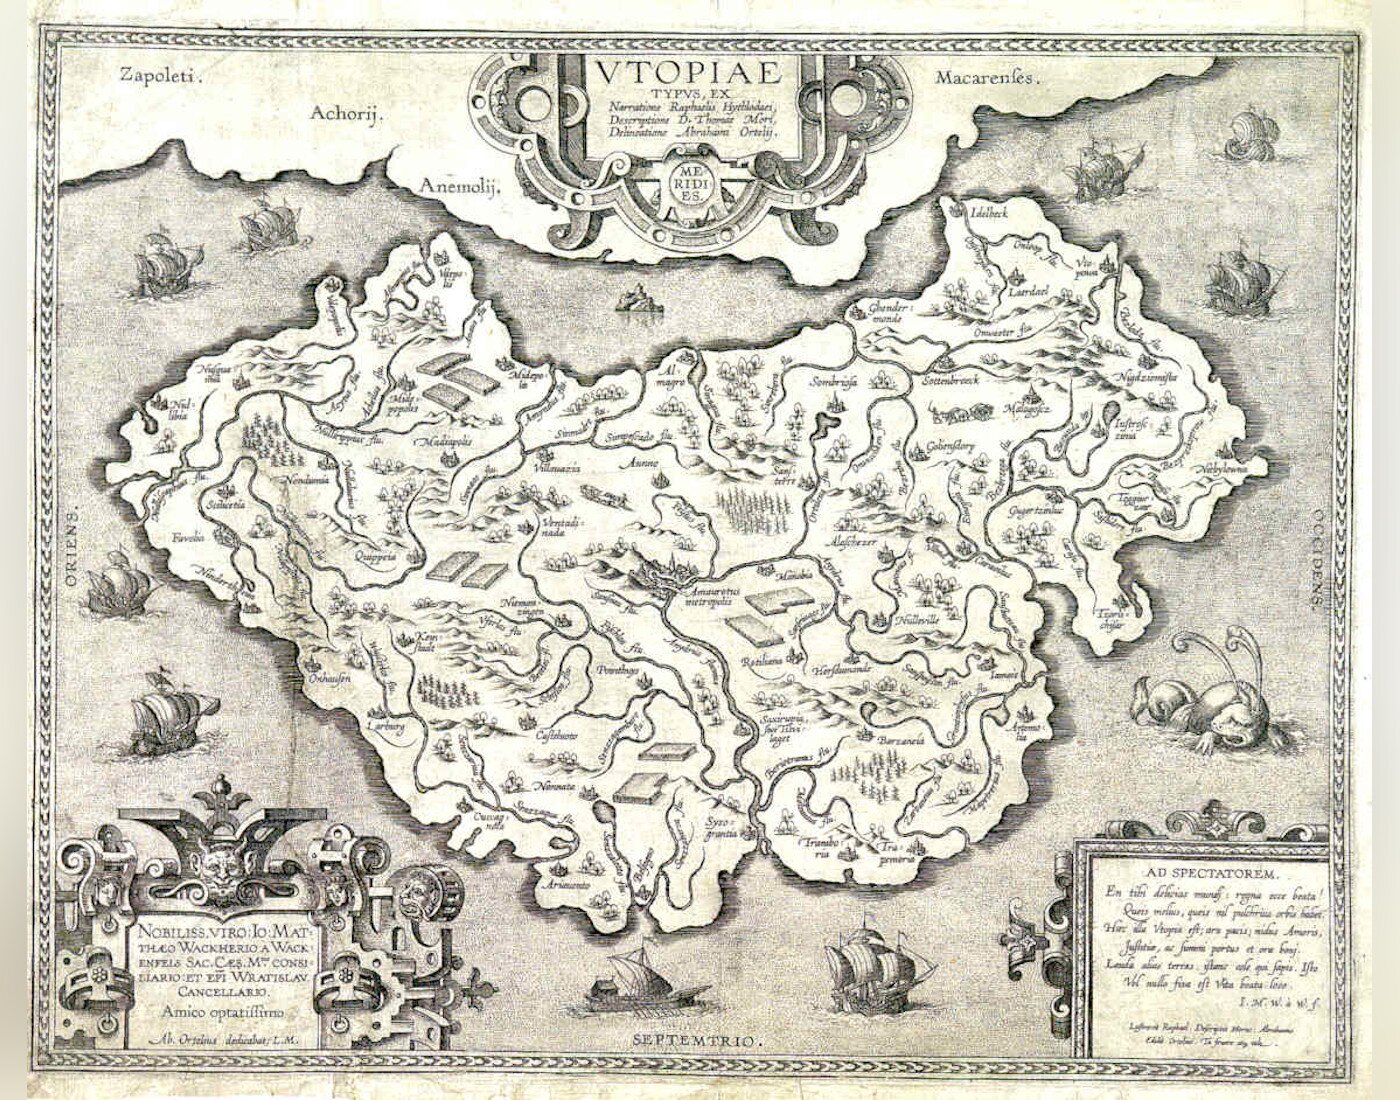 Rycina przedstawia mapę mitycznej Utopii.